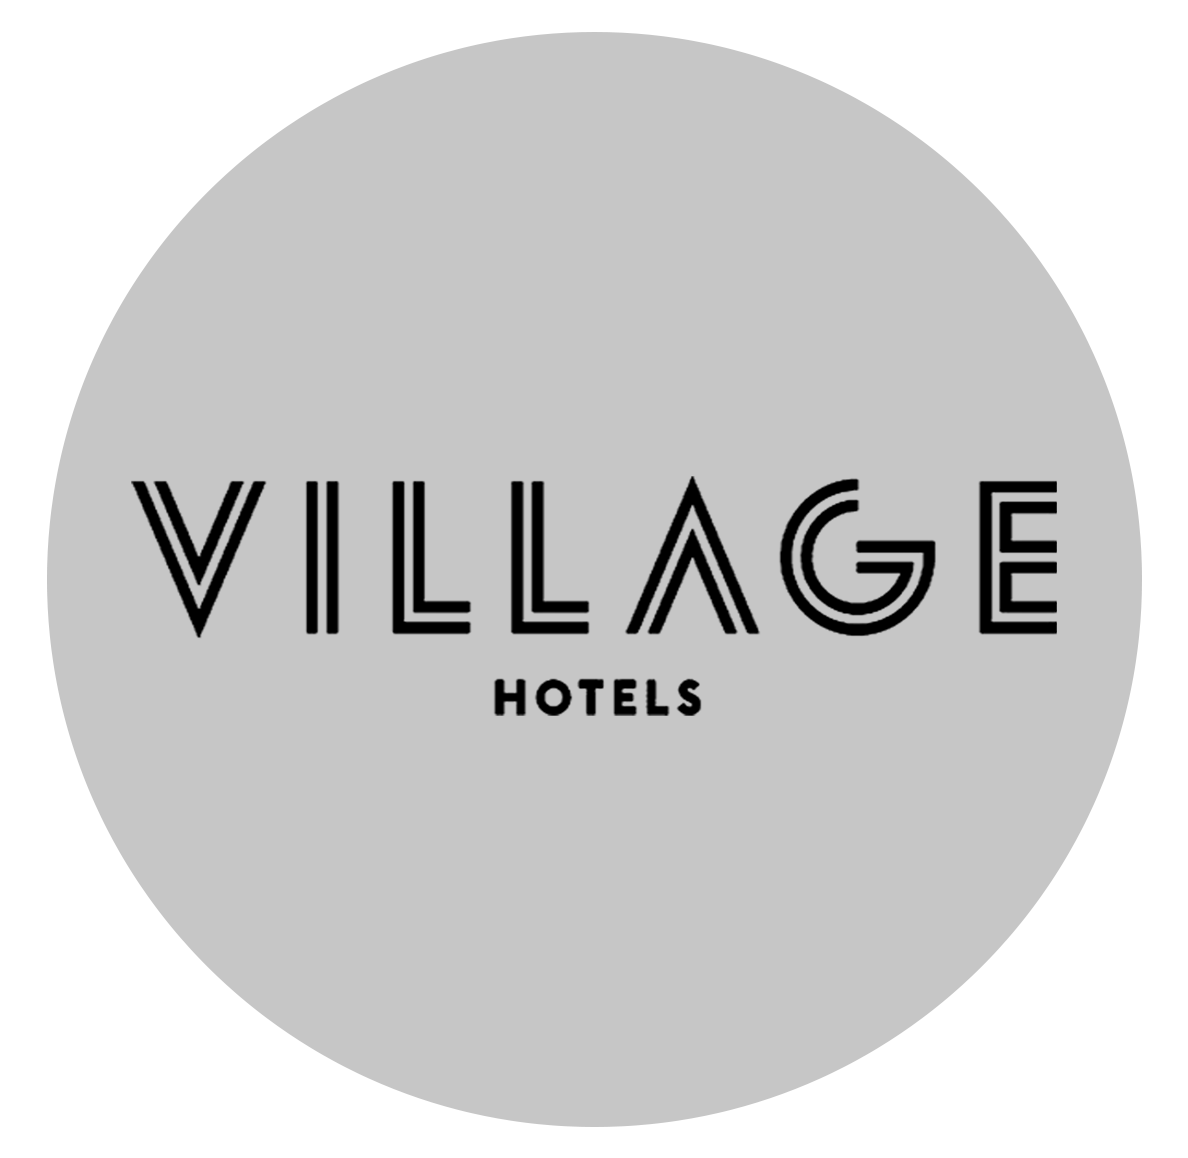 Village-Hotels